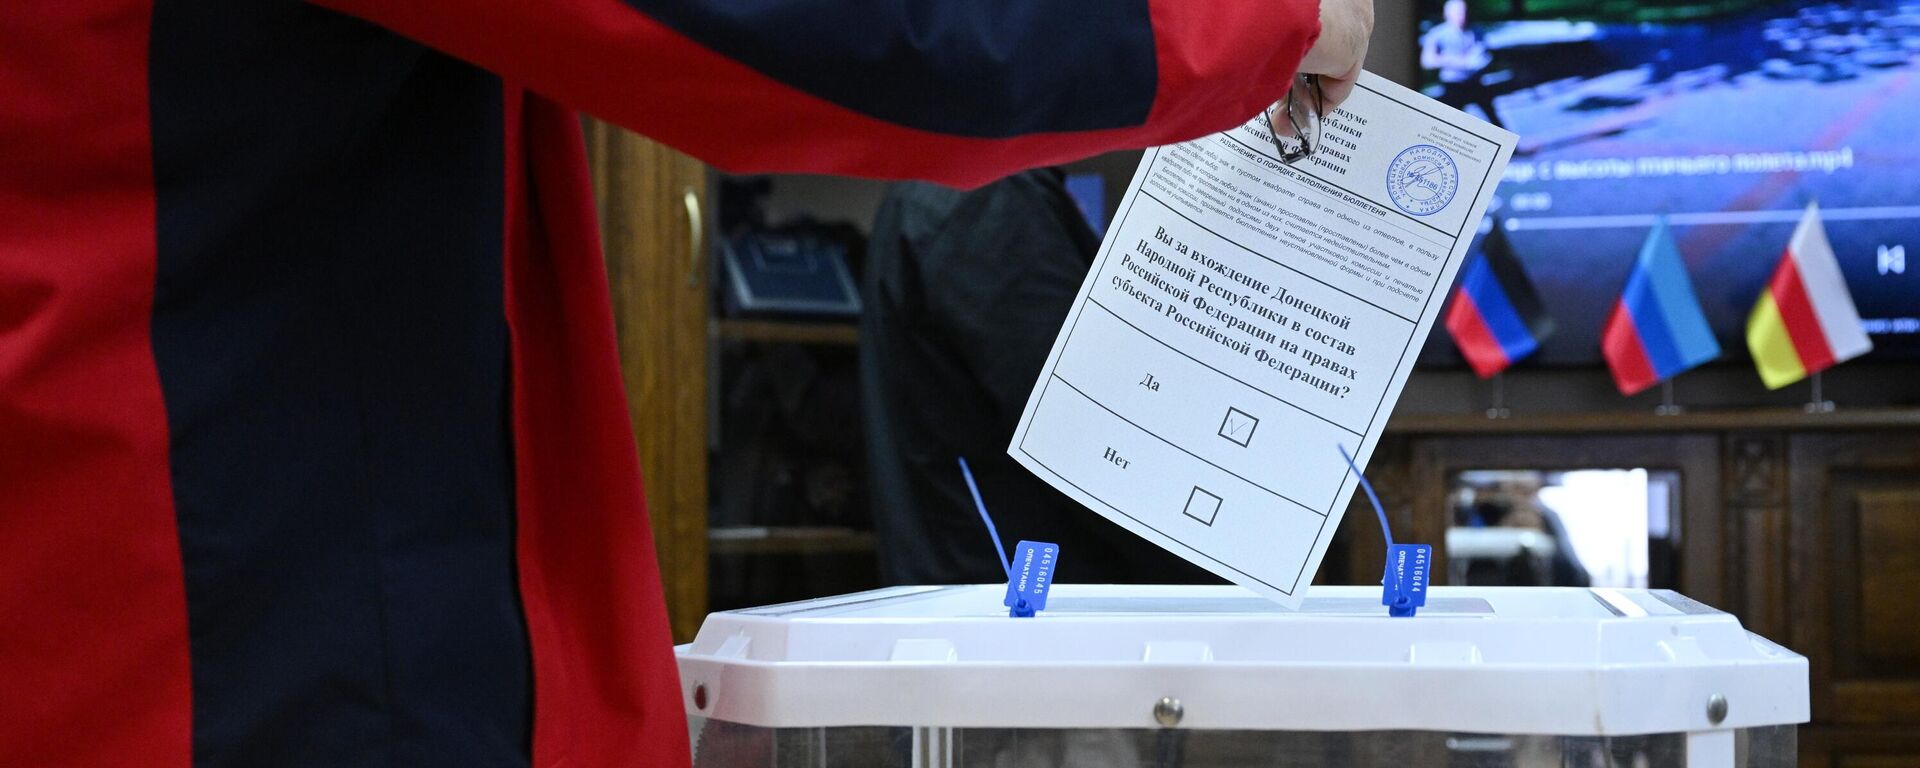 Một người đàn ông bỏ phiếu trong cuộc trưng cầu dân ý về việc gia nhập Cộng hòa Nhân dân Donetsk và Cộng hòa Nhân dân Lugansk vào Nga tại một điểm bỏ phiếu ở Đại sứ quán DNR ở Moskva - Sputnik Việt Nam, 1920, 23.09.2022